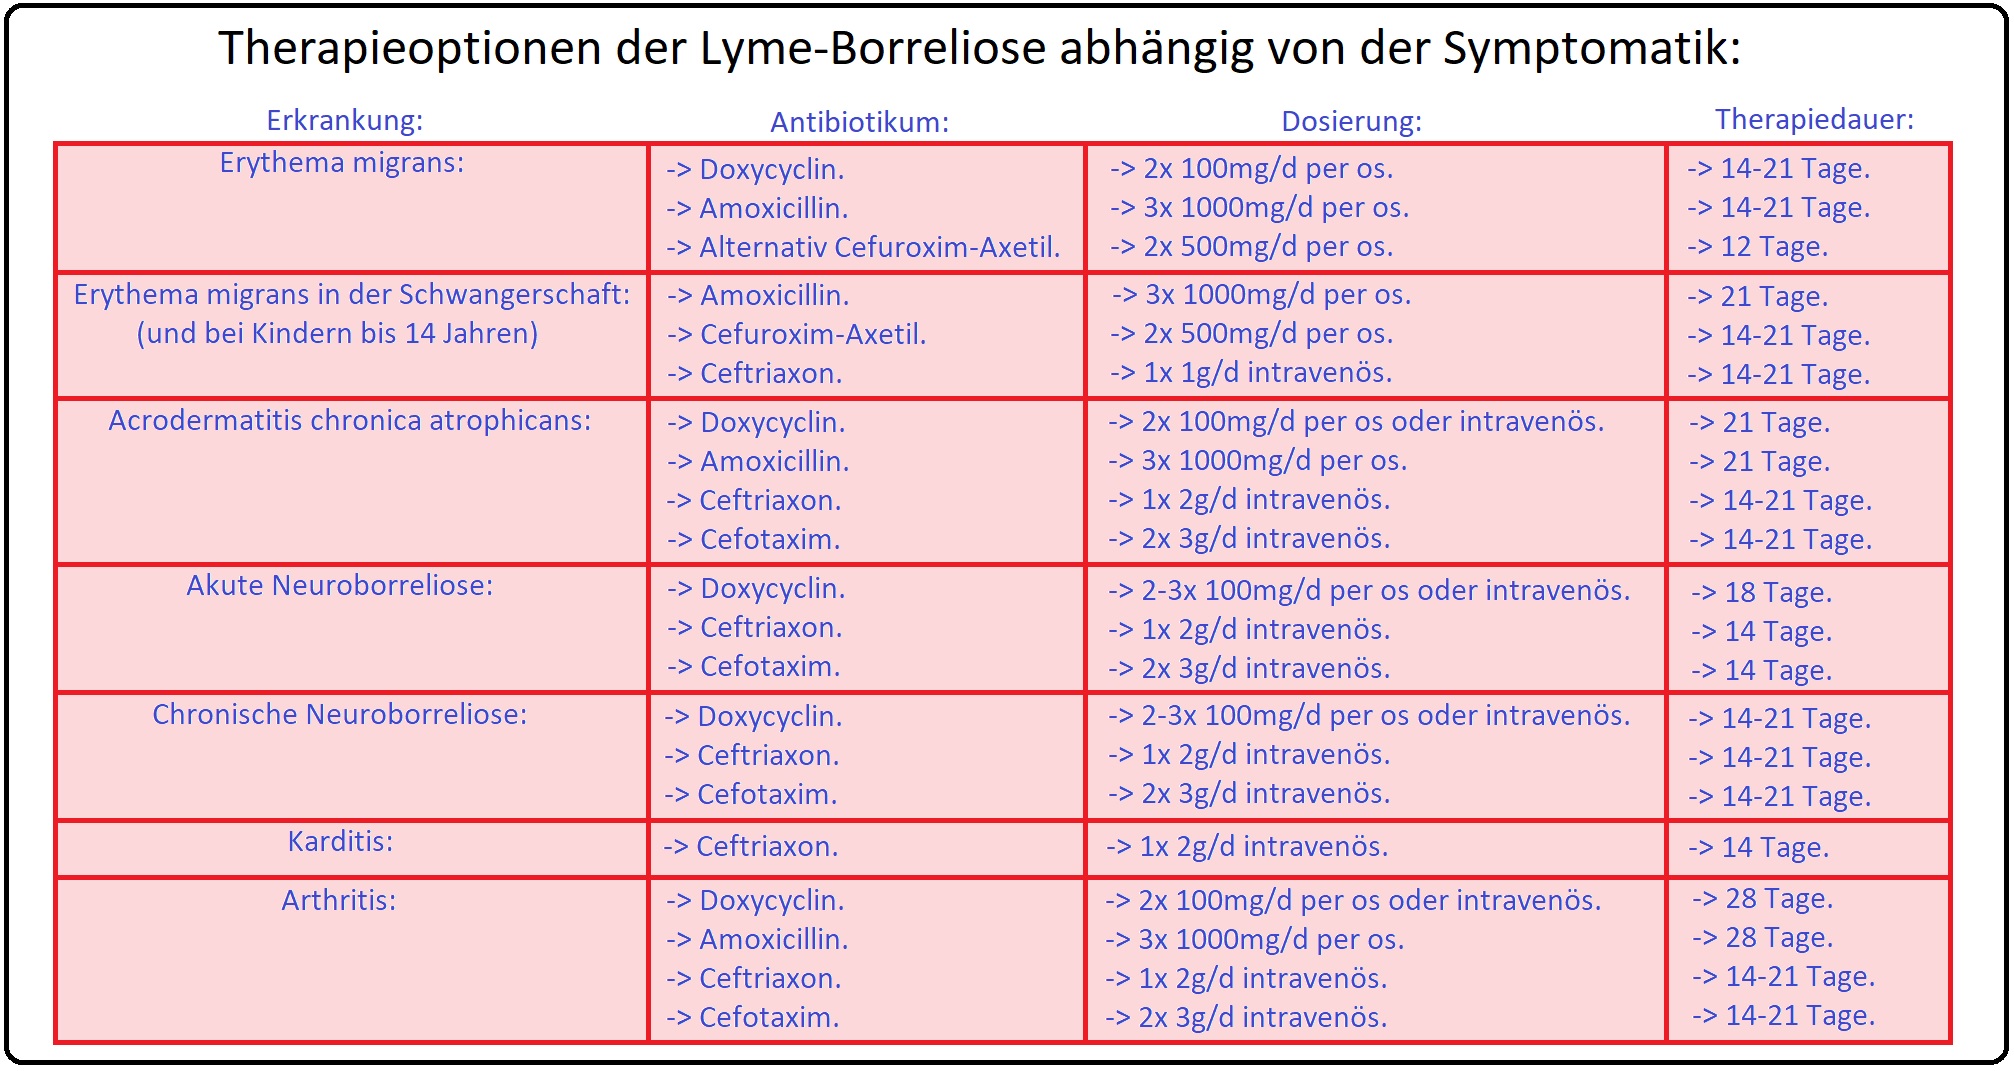 008 Therapieoptionen der Lyme Borreliose abhängig von der Symptomatik